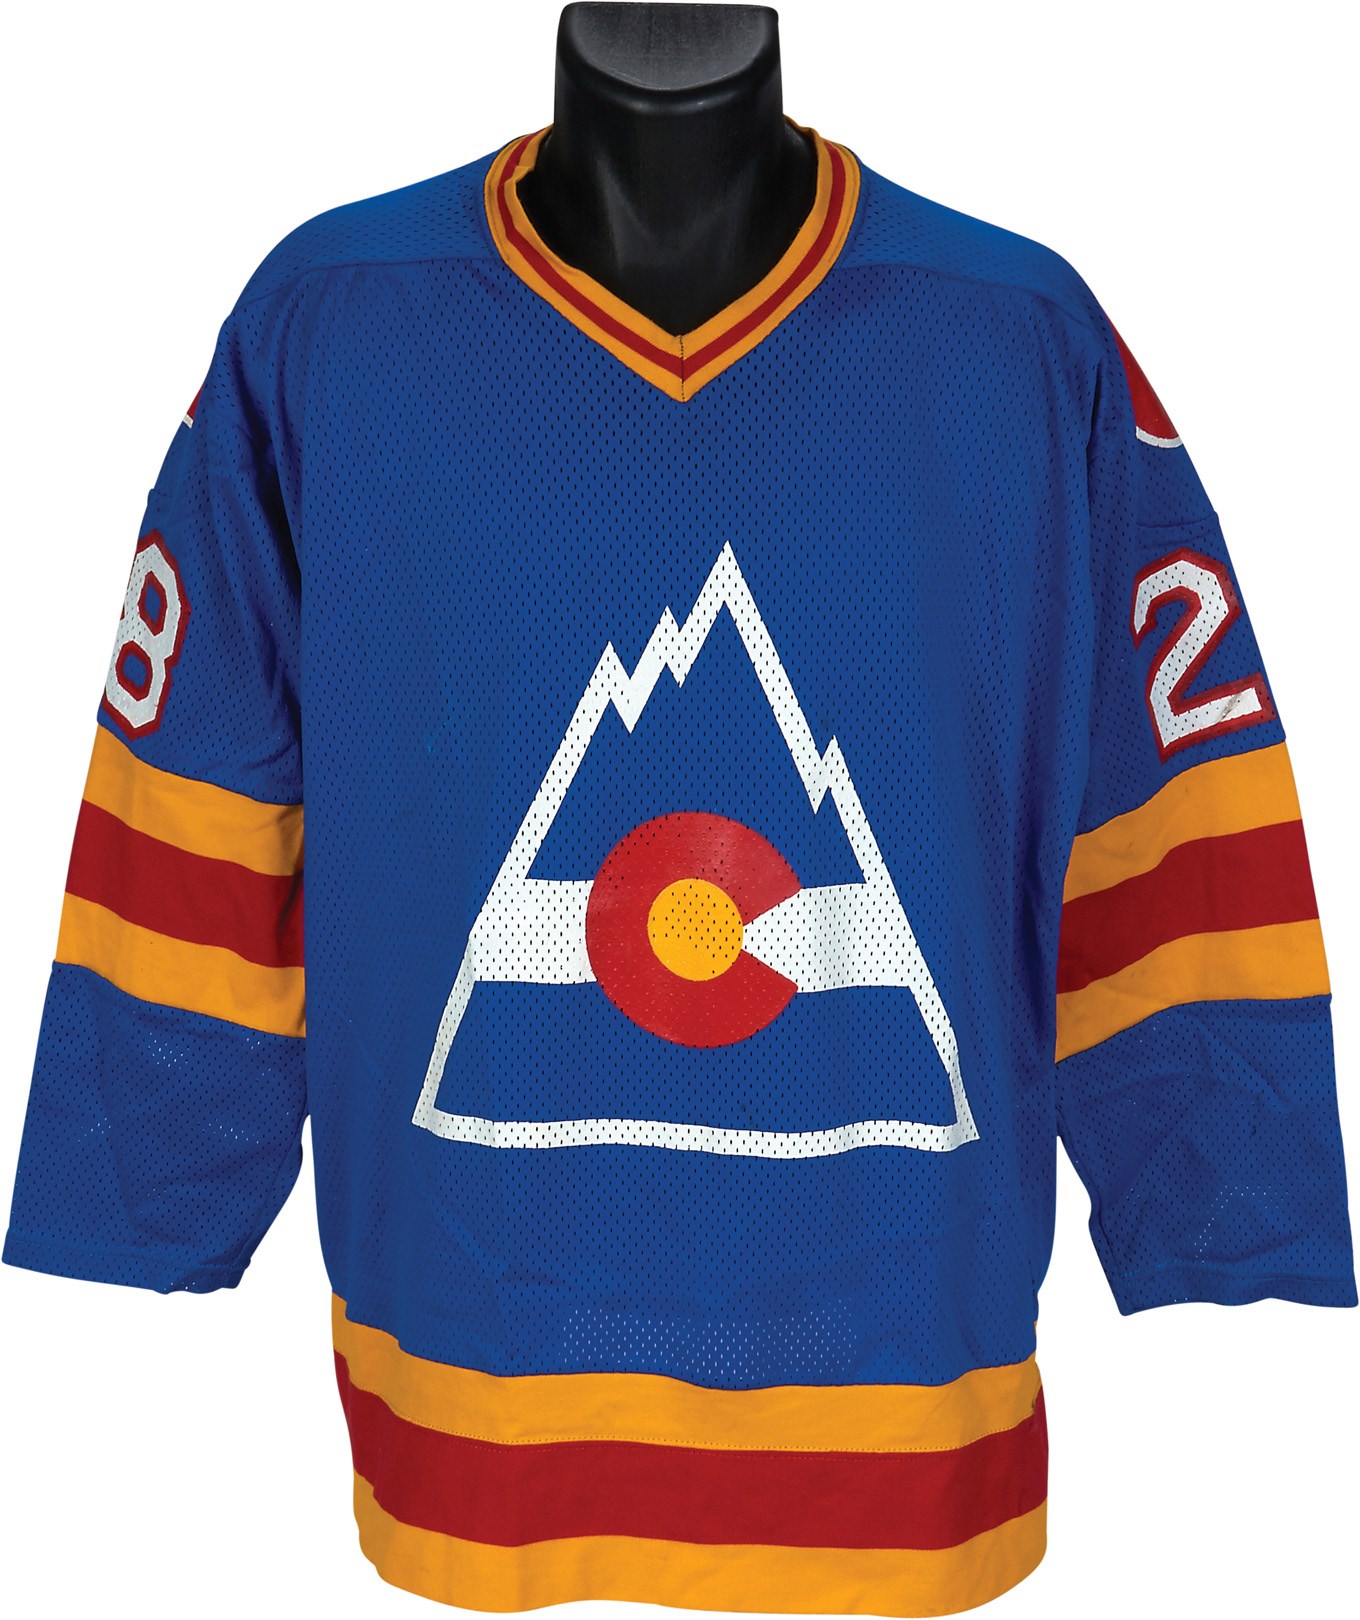 Hockey - Circa 1978-79 Colorado Rockies Game Worn Jersey